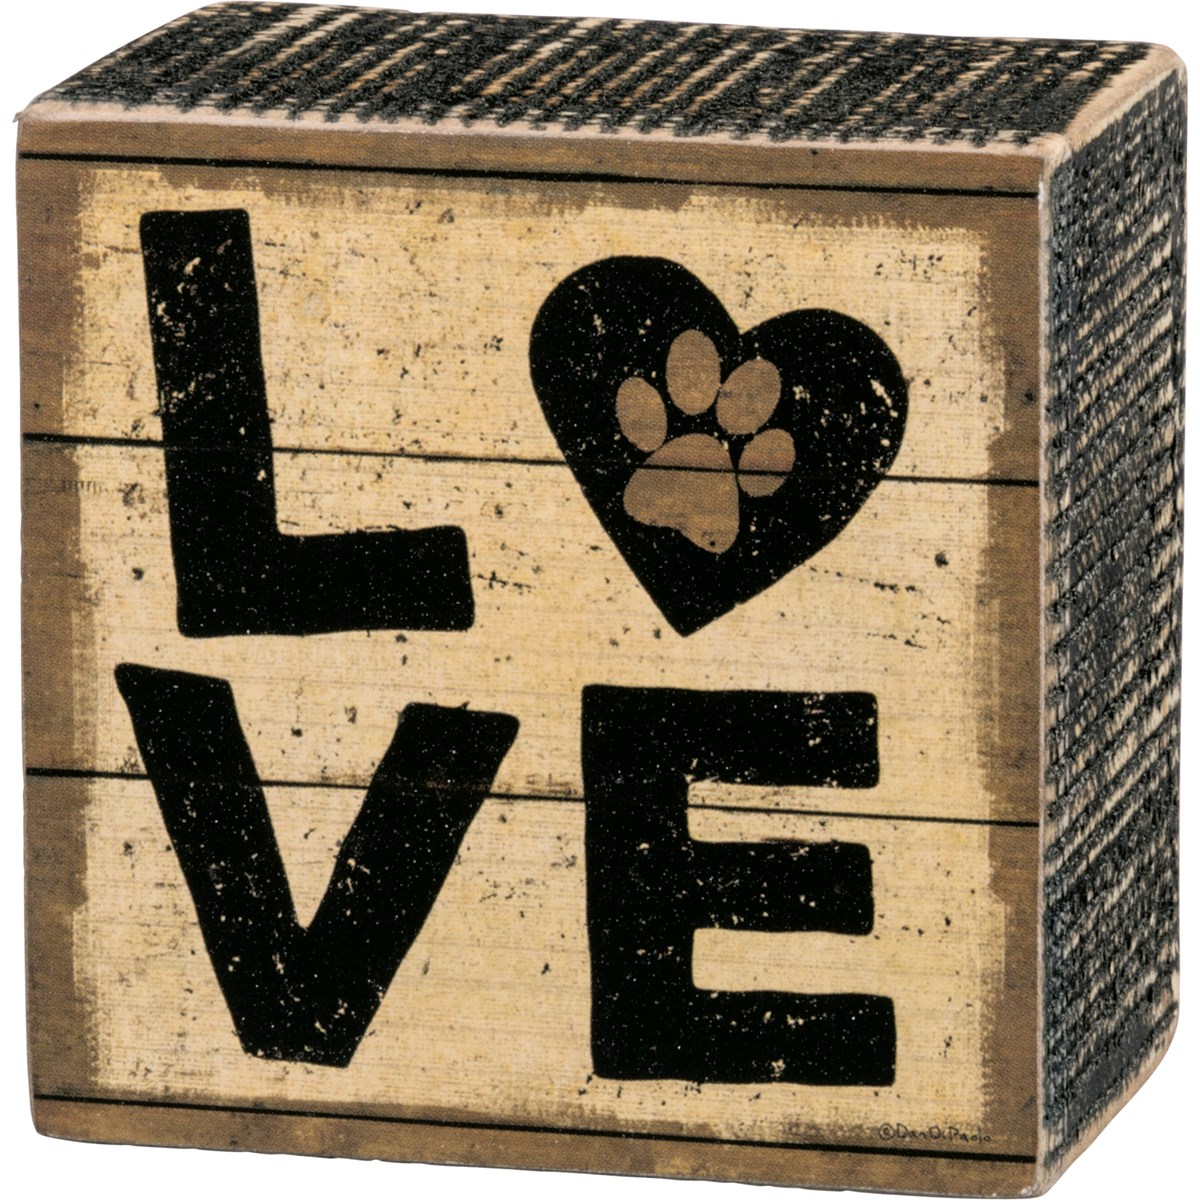 Box Sign - Love - 3" x 3" x 1.75" - Wood, Paper